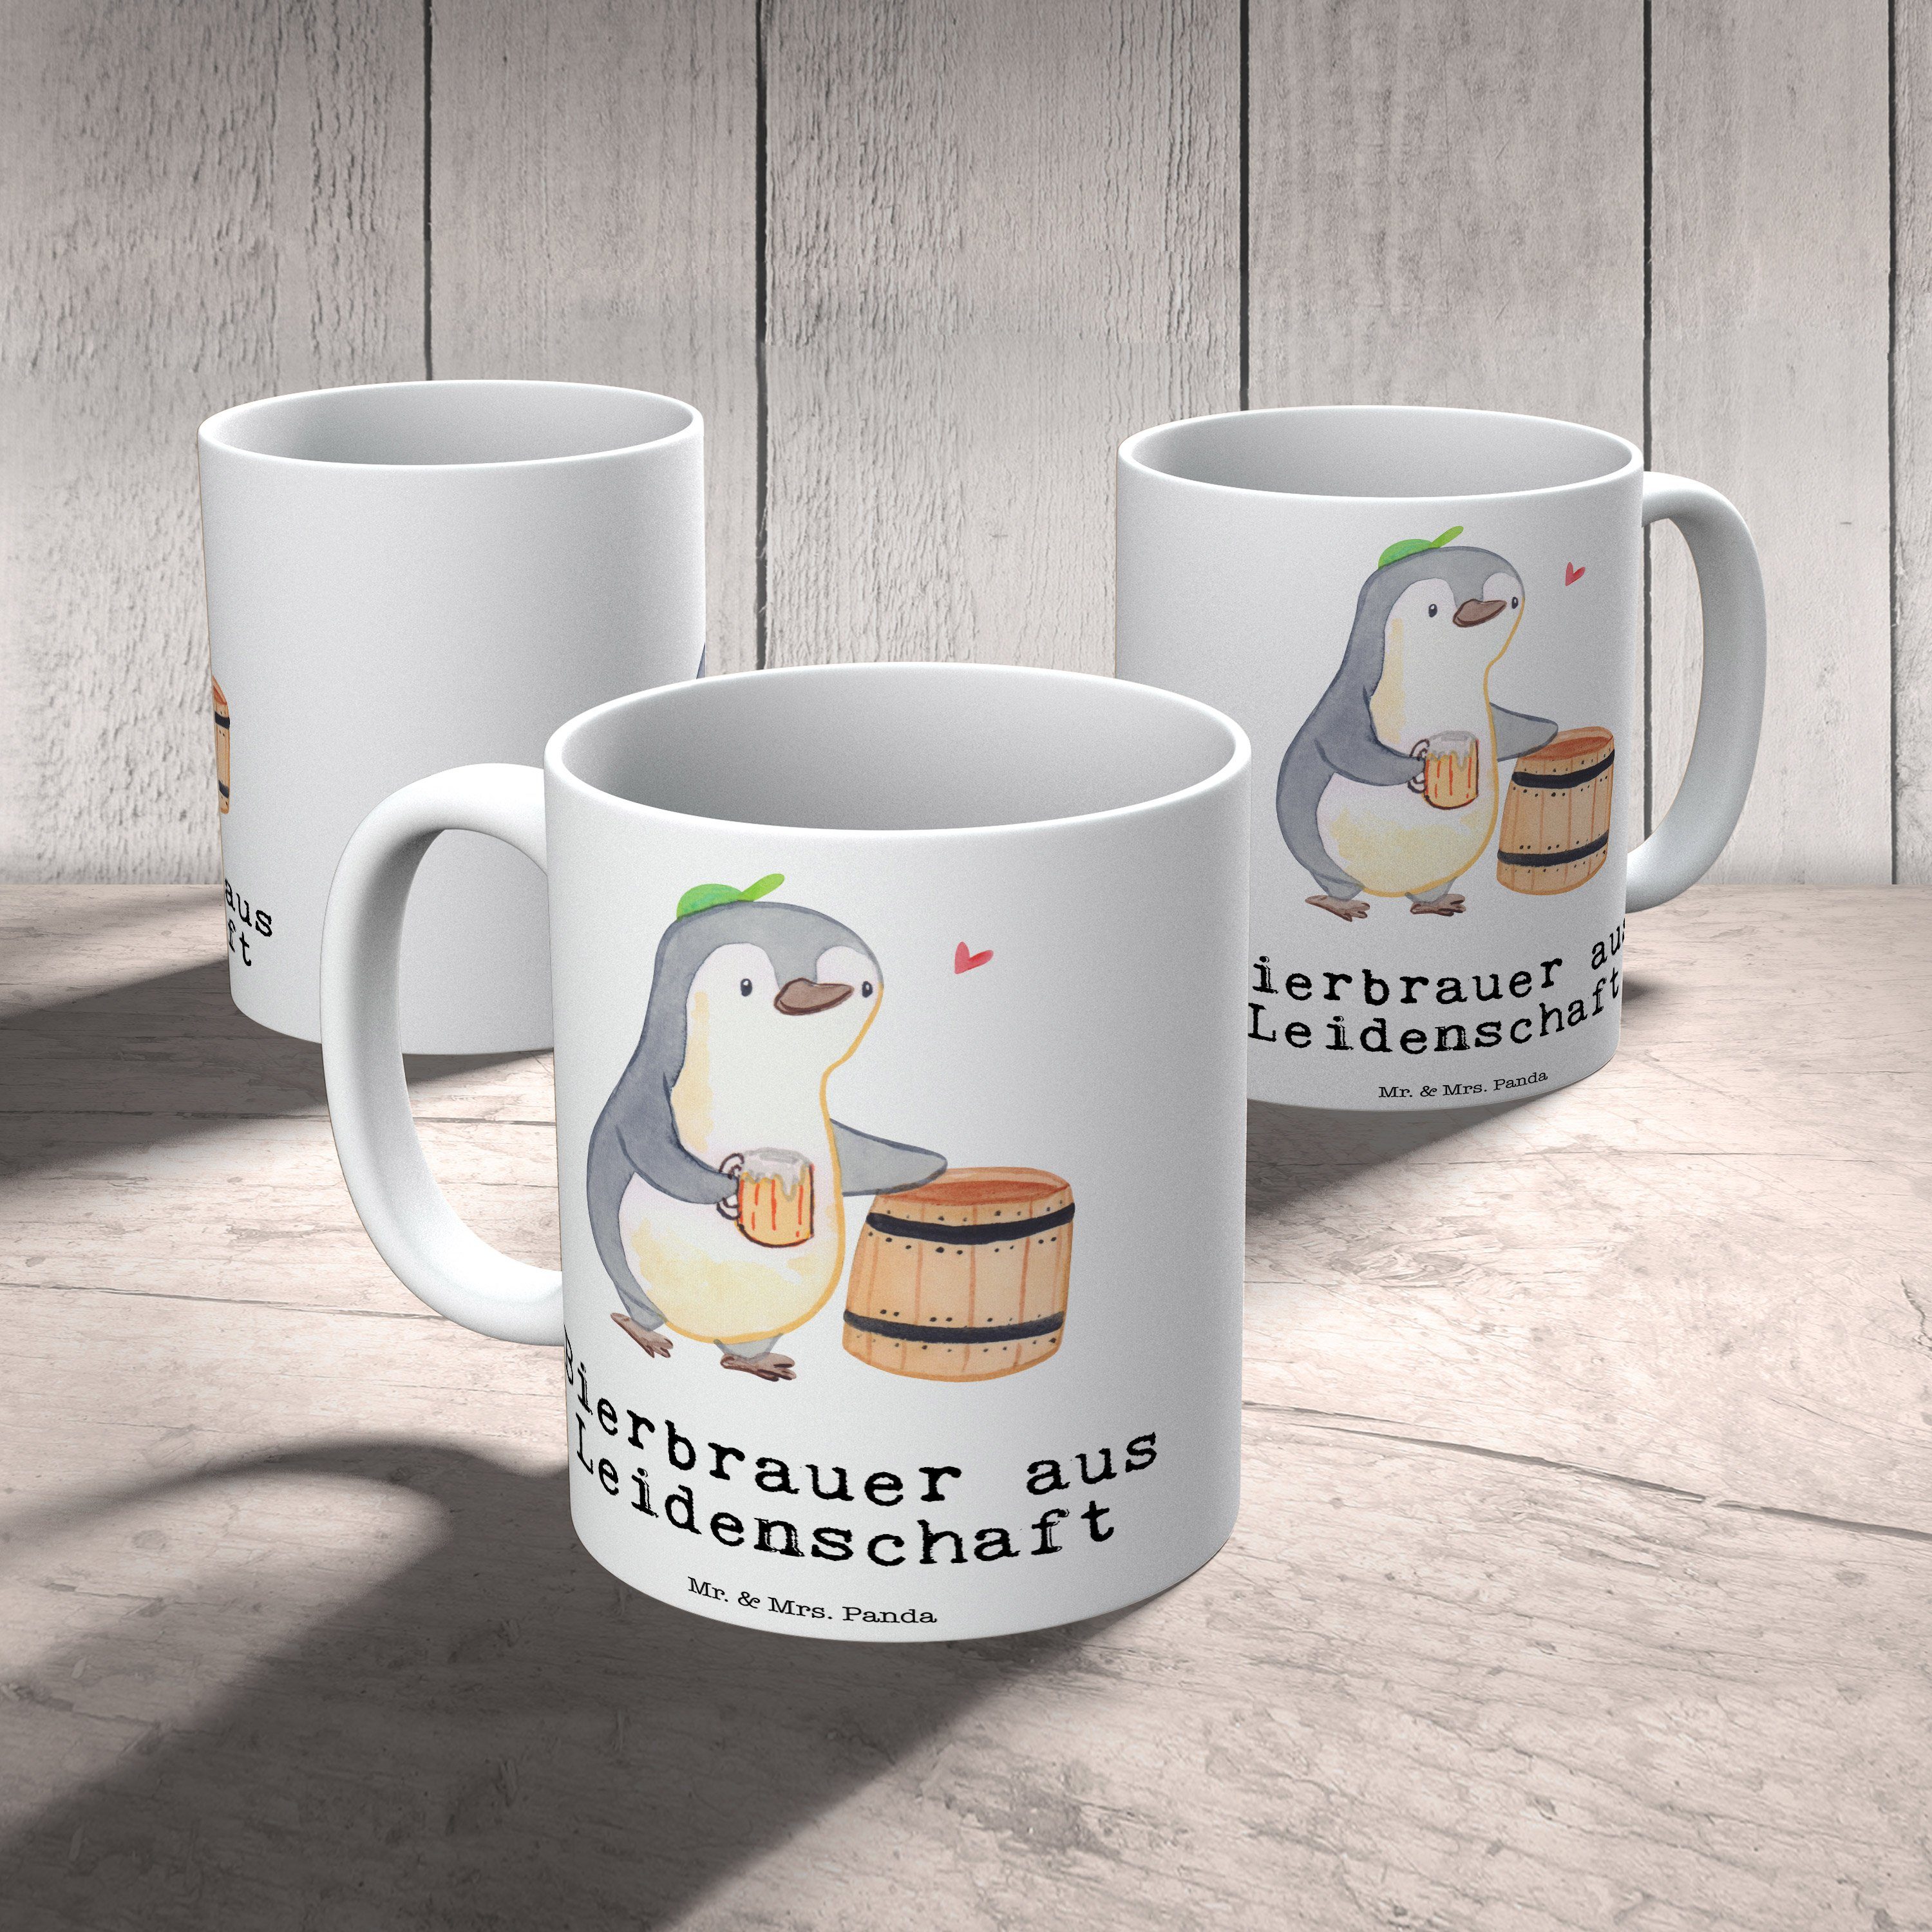 - Tasse Weiß Oktoberf, & Mr. Panda - Leidenschaft Keramik Mrs. Bierbrauer Kaffeebecher, Geschenk, aus